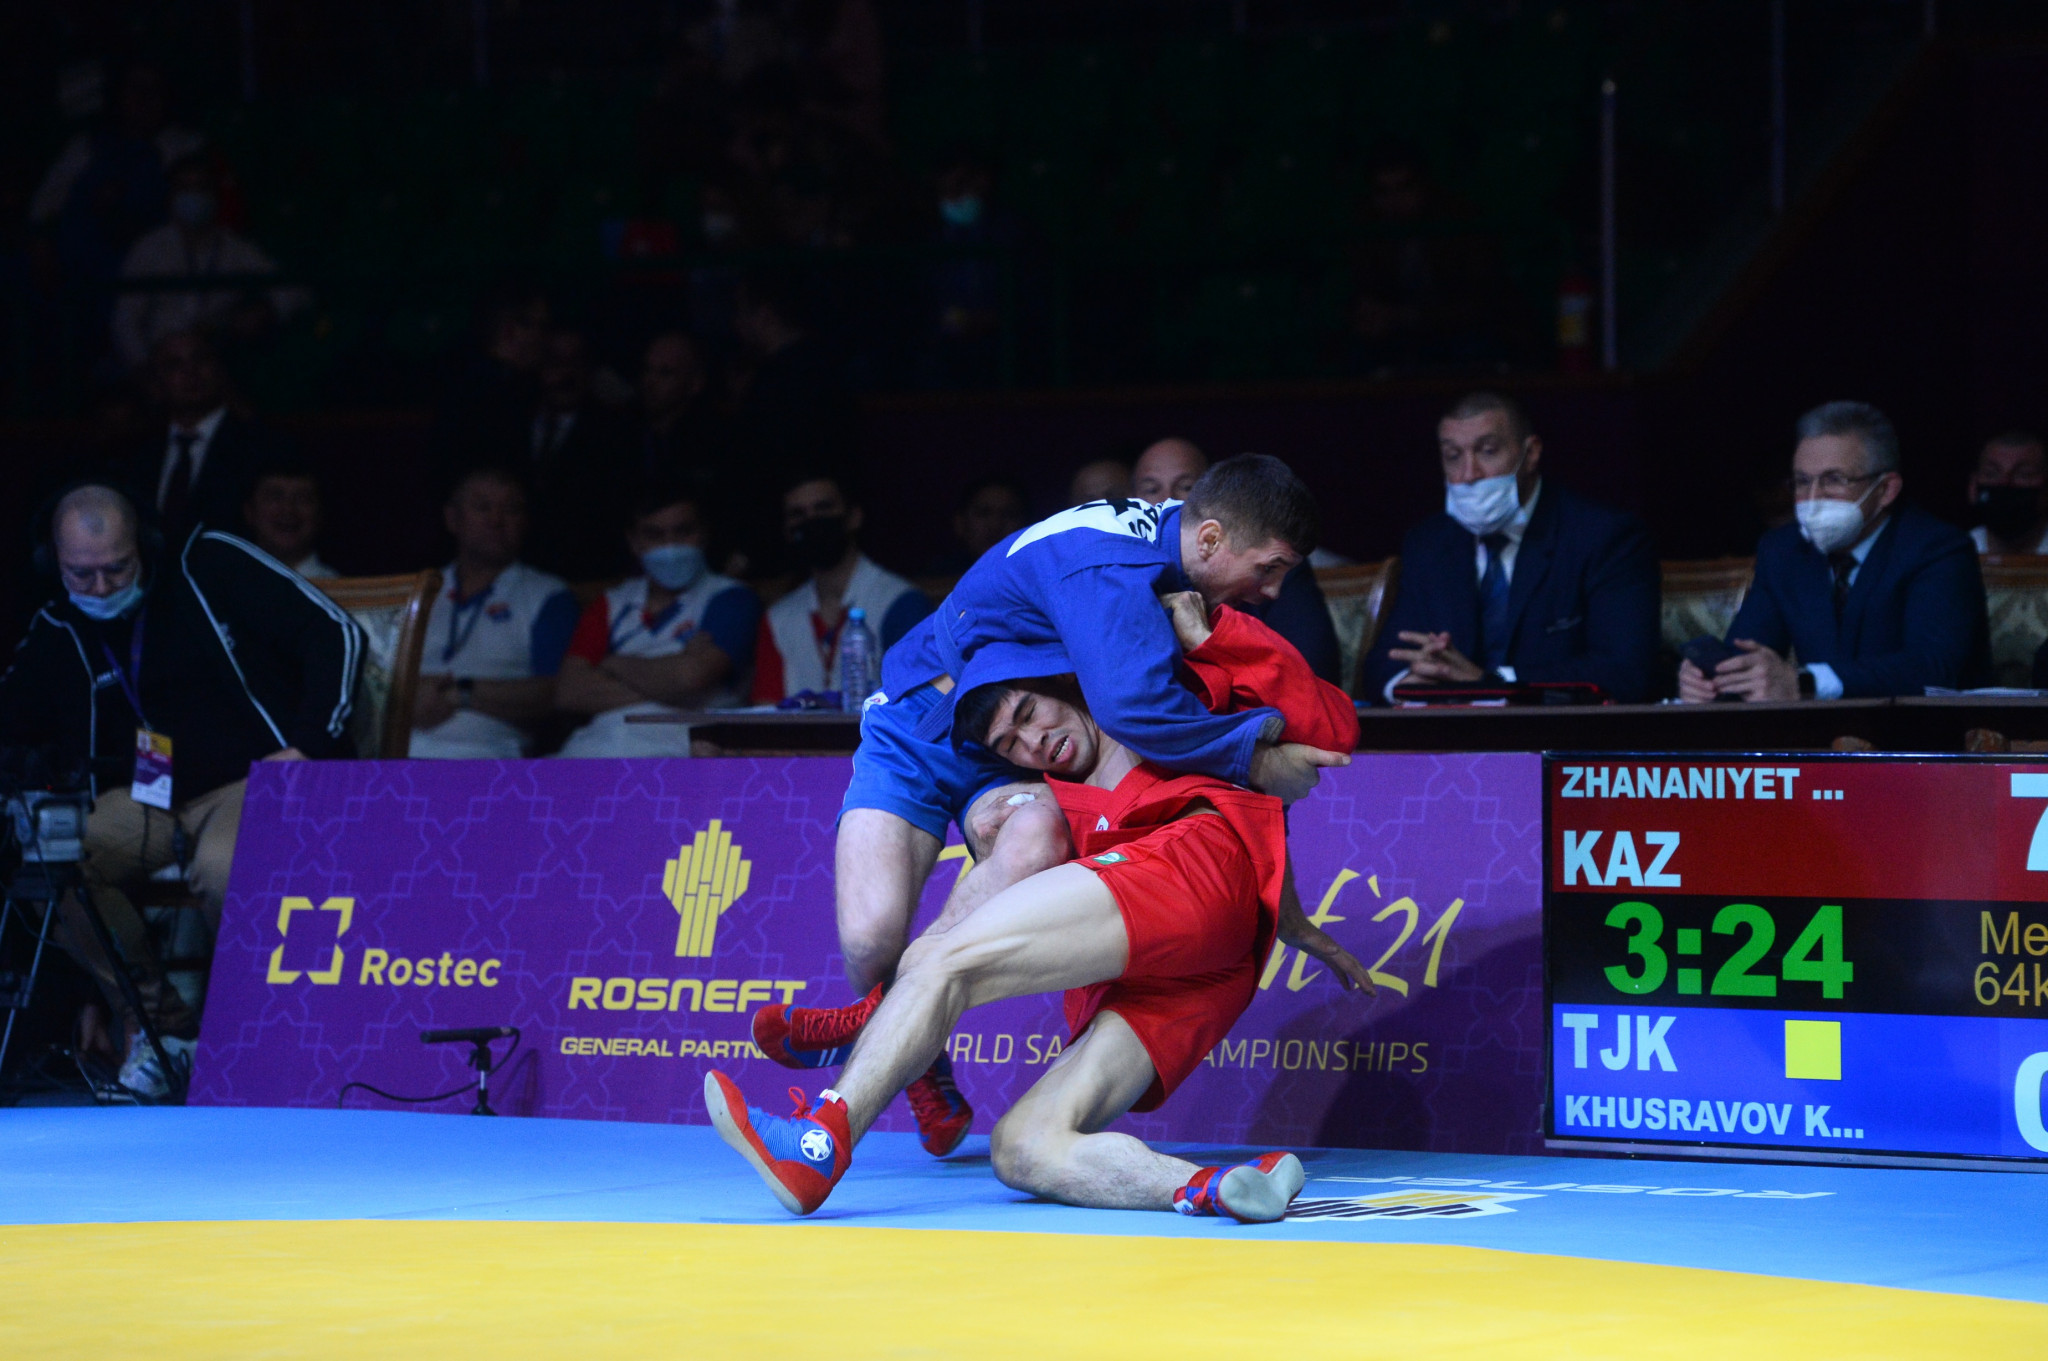 Rakhat Zhananiyet overpowers Khushqadam Khusravov on his way to winning Kazakhstan's second gold of the night ©FIAS